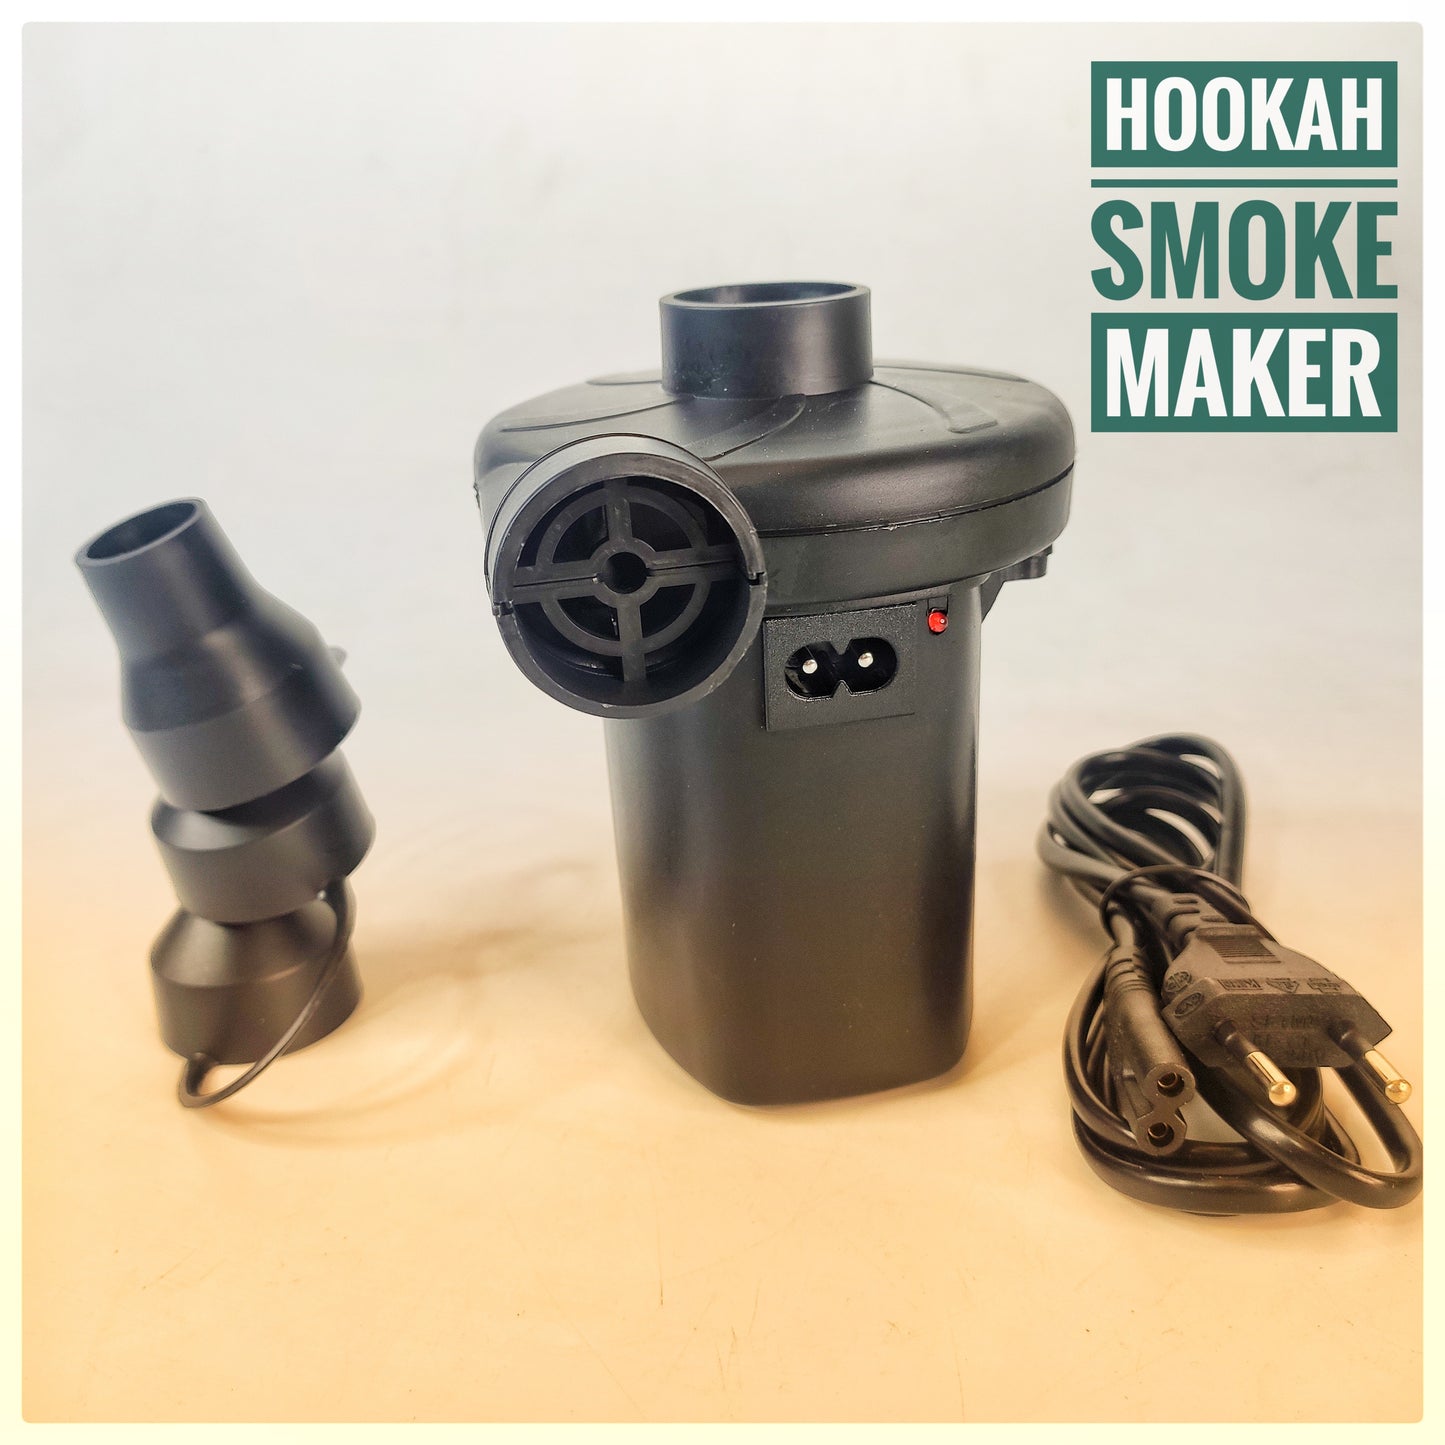 Hookah Smoke Maker - Electric Accessory